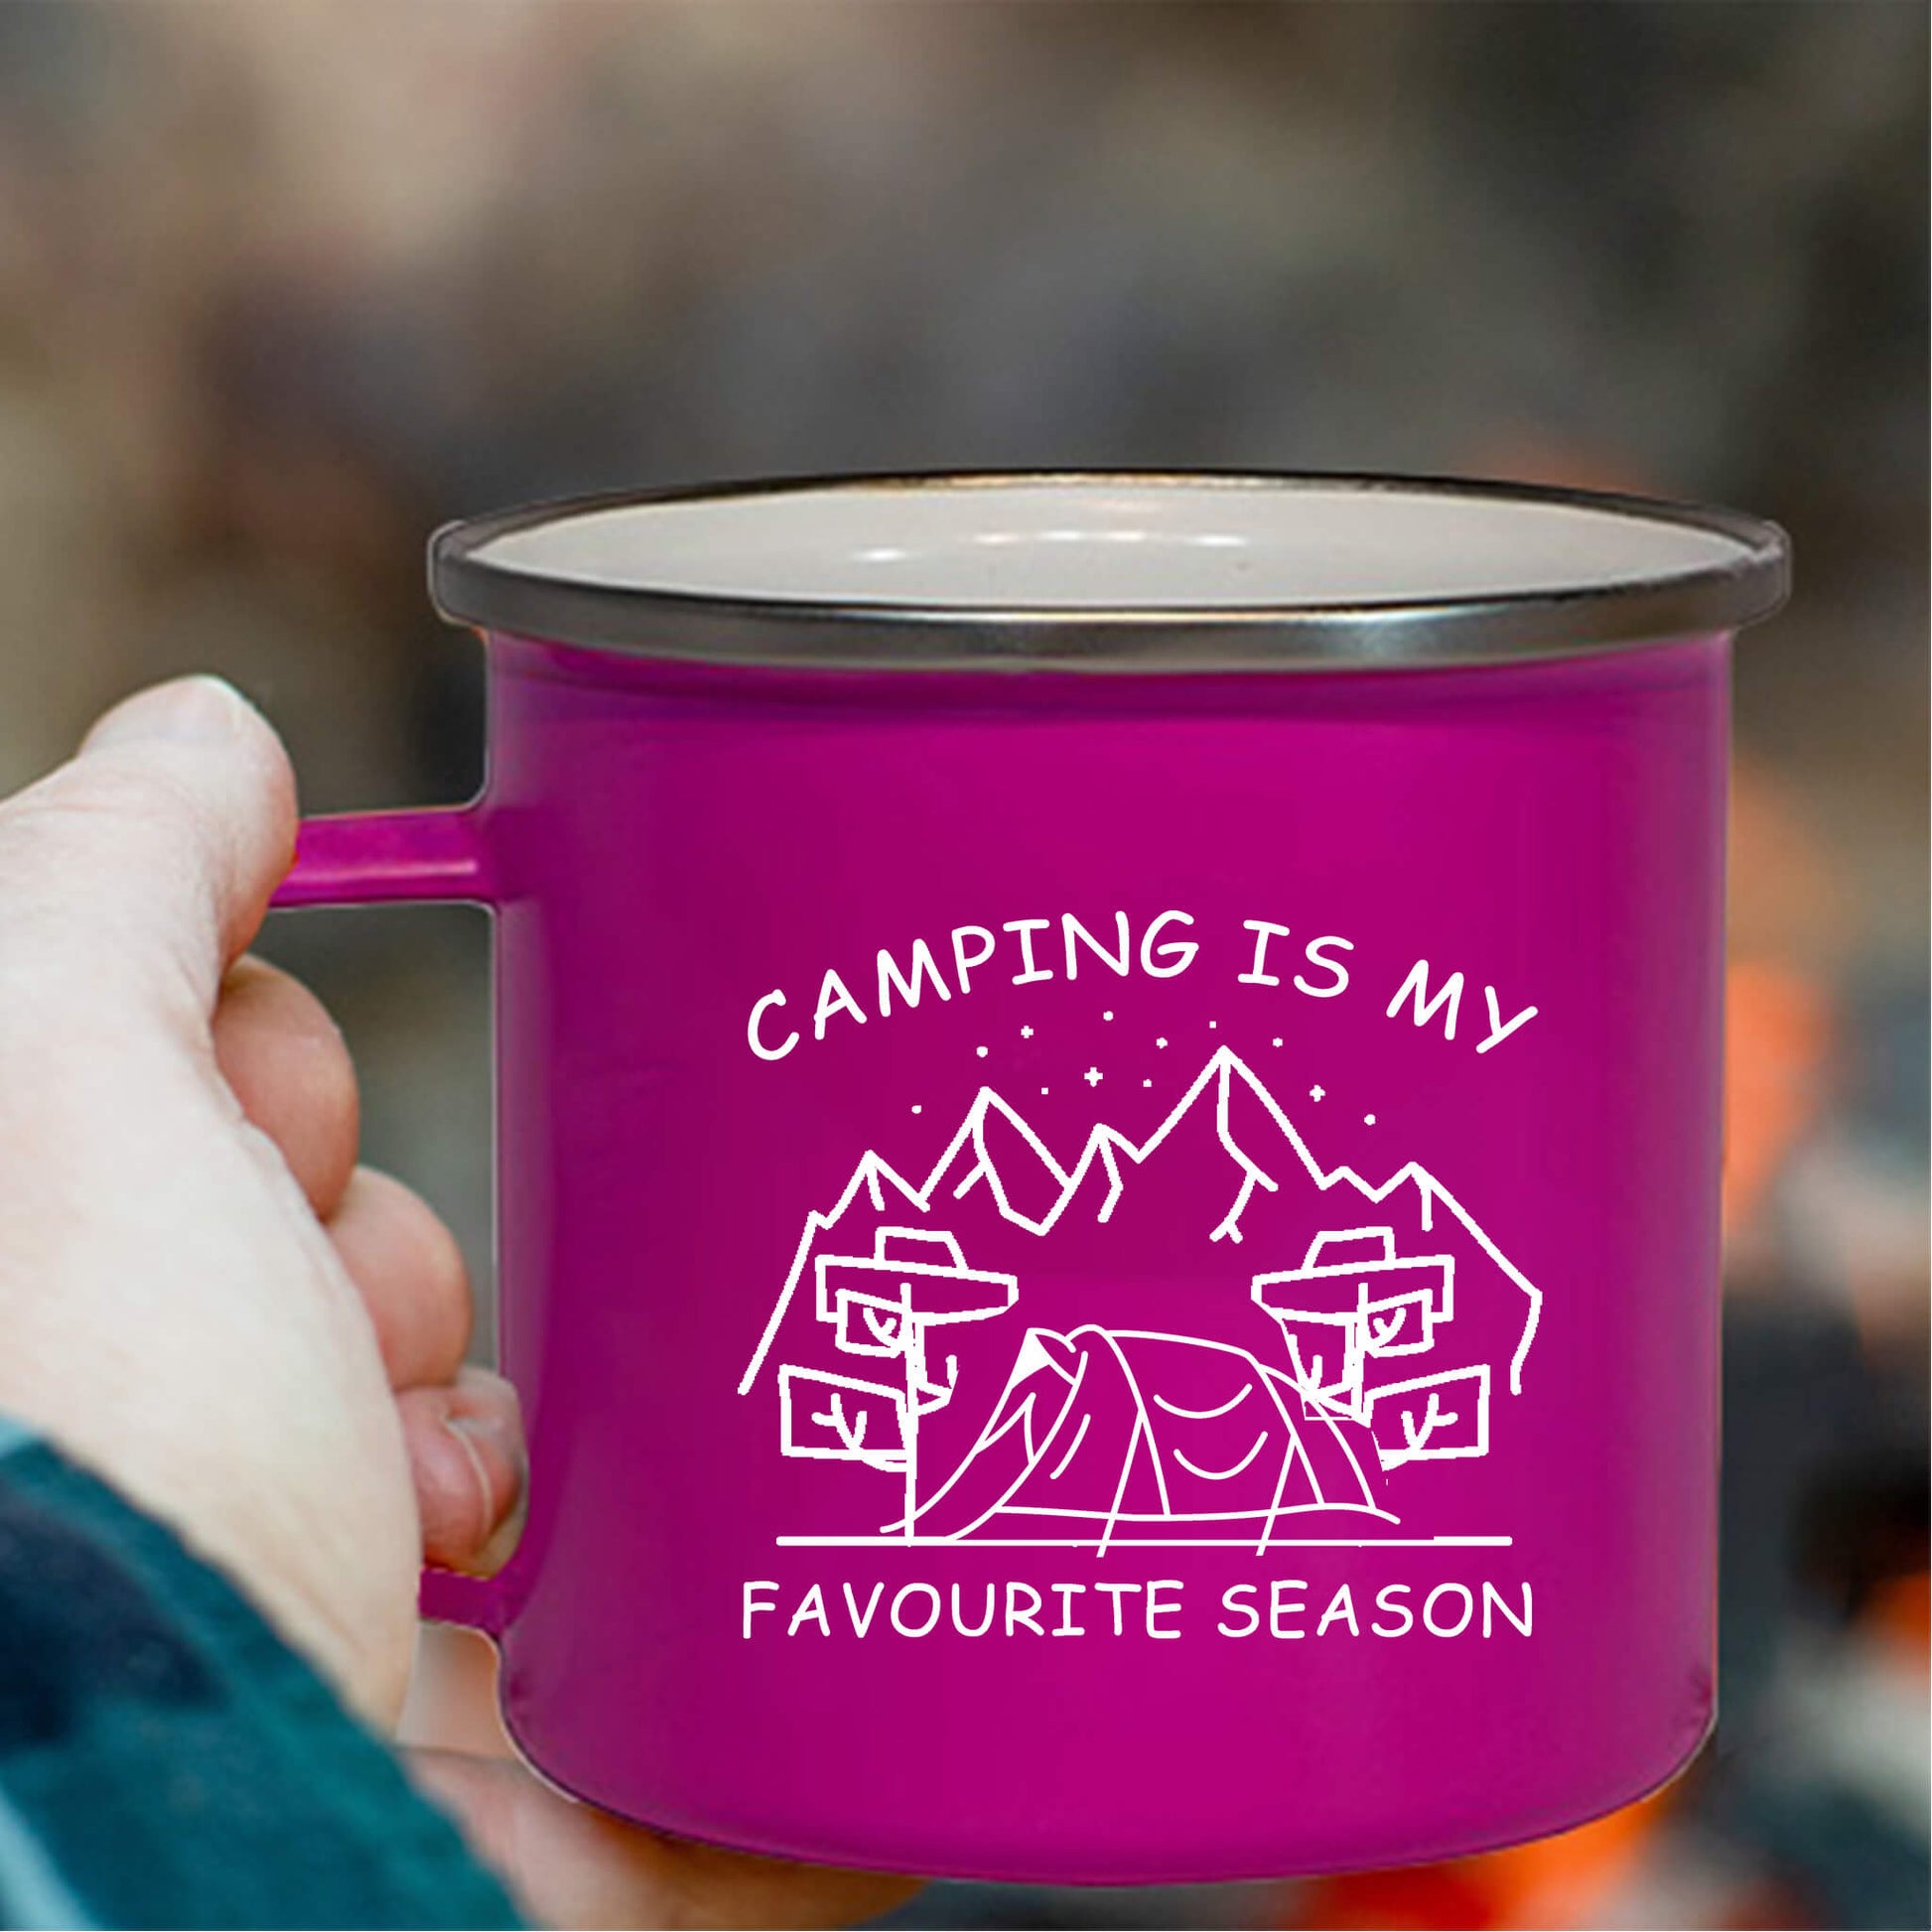 campingis my favourite season tent enamel mug pink